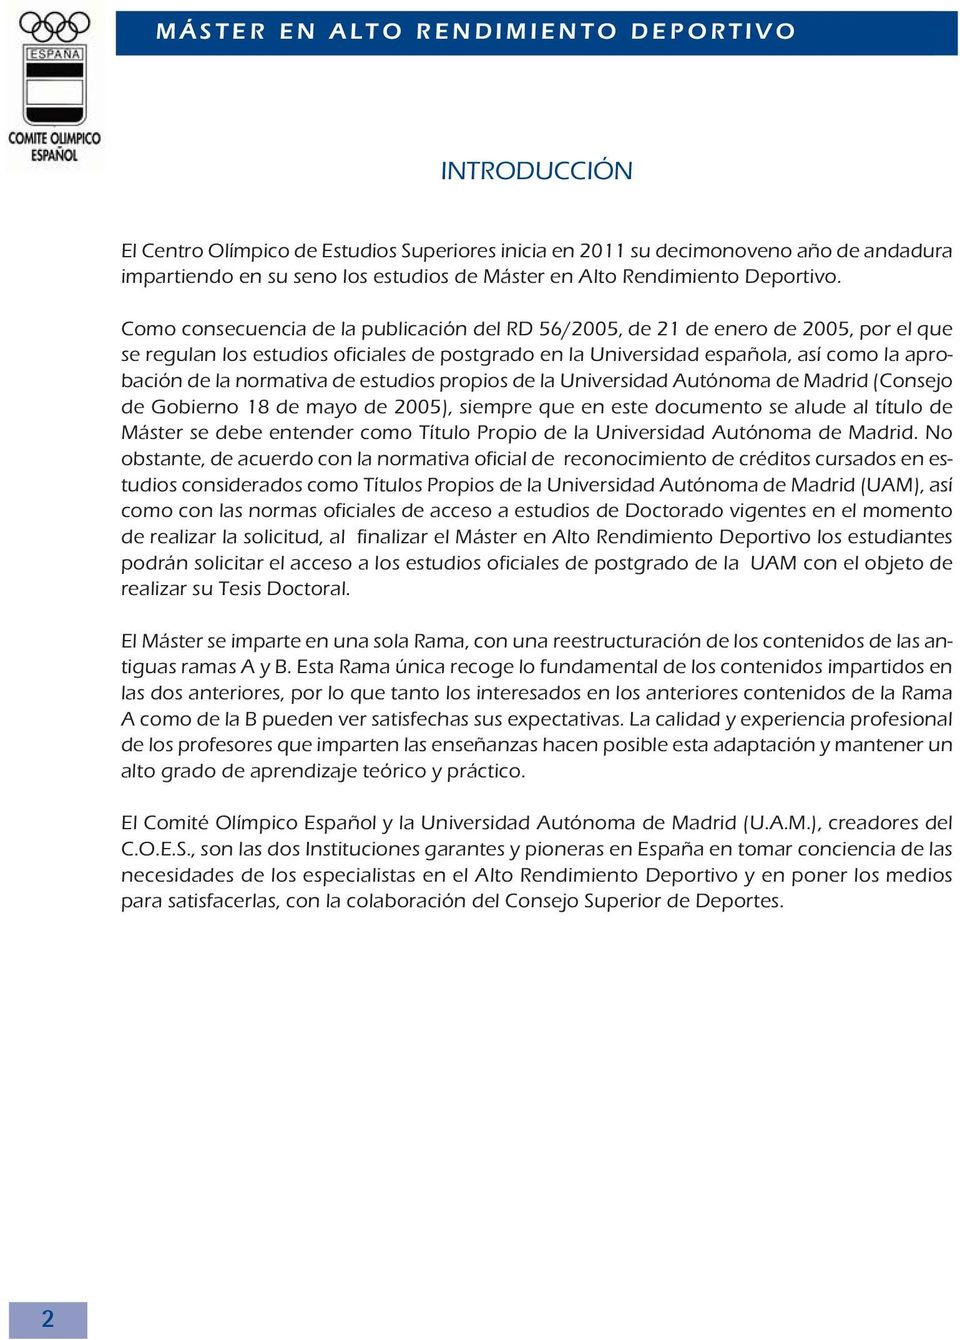 Como consecuencia de la publicación del RD 56/2005, de 21 de enero de 2005, por el que se regulan los estudios oficiales de postgrado en la Universidad española, así como la aprobación de la